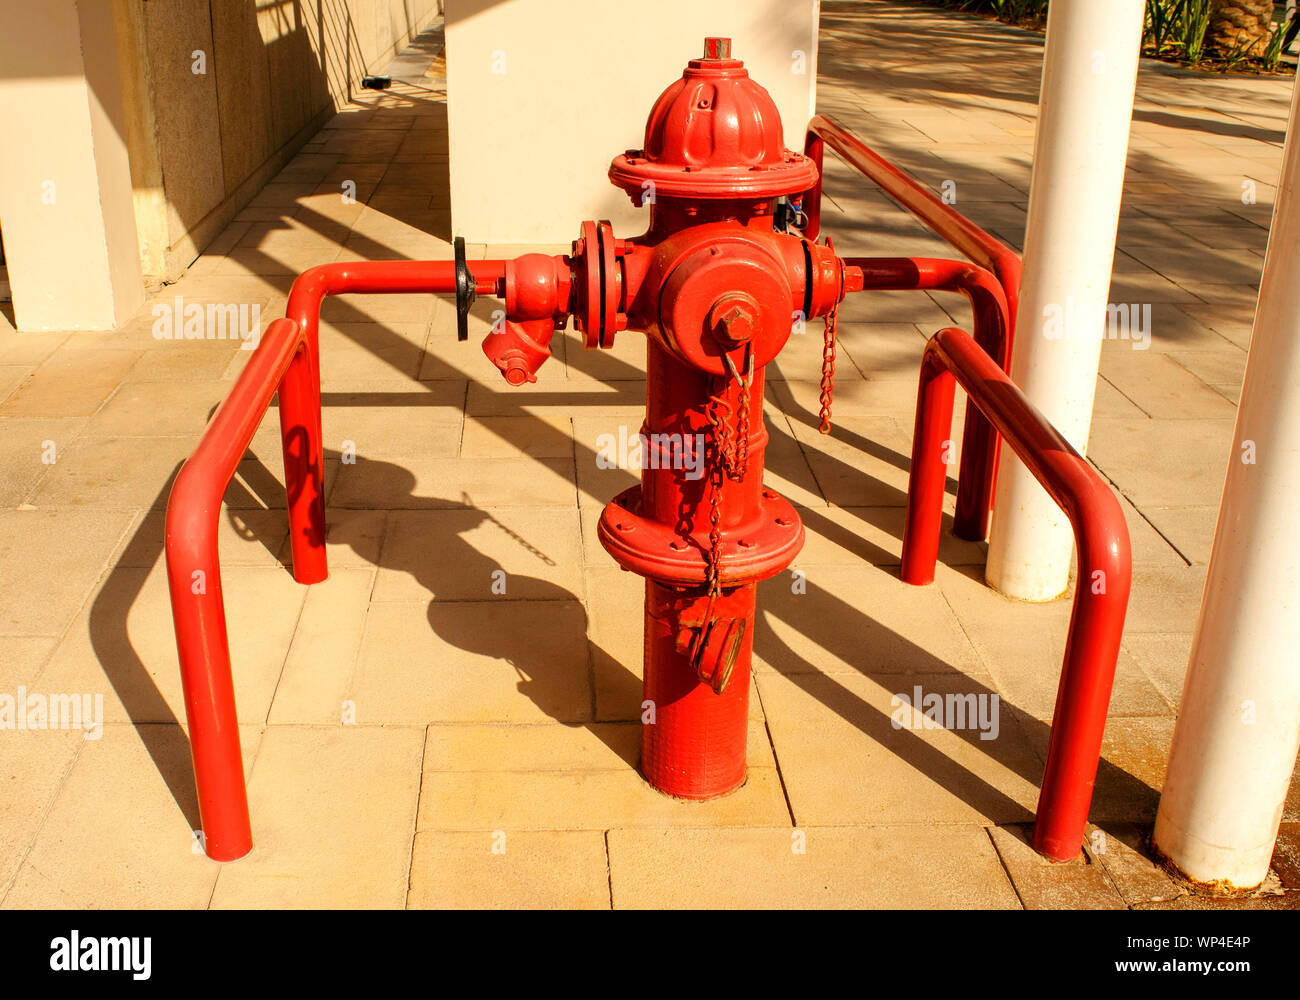 Rote Säule - Typ Hydranten für den Notfall brand Zugang in eine Straße. Stockfoto